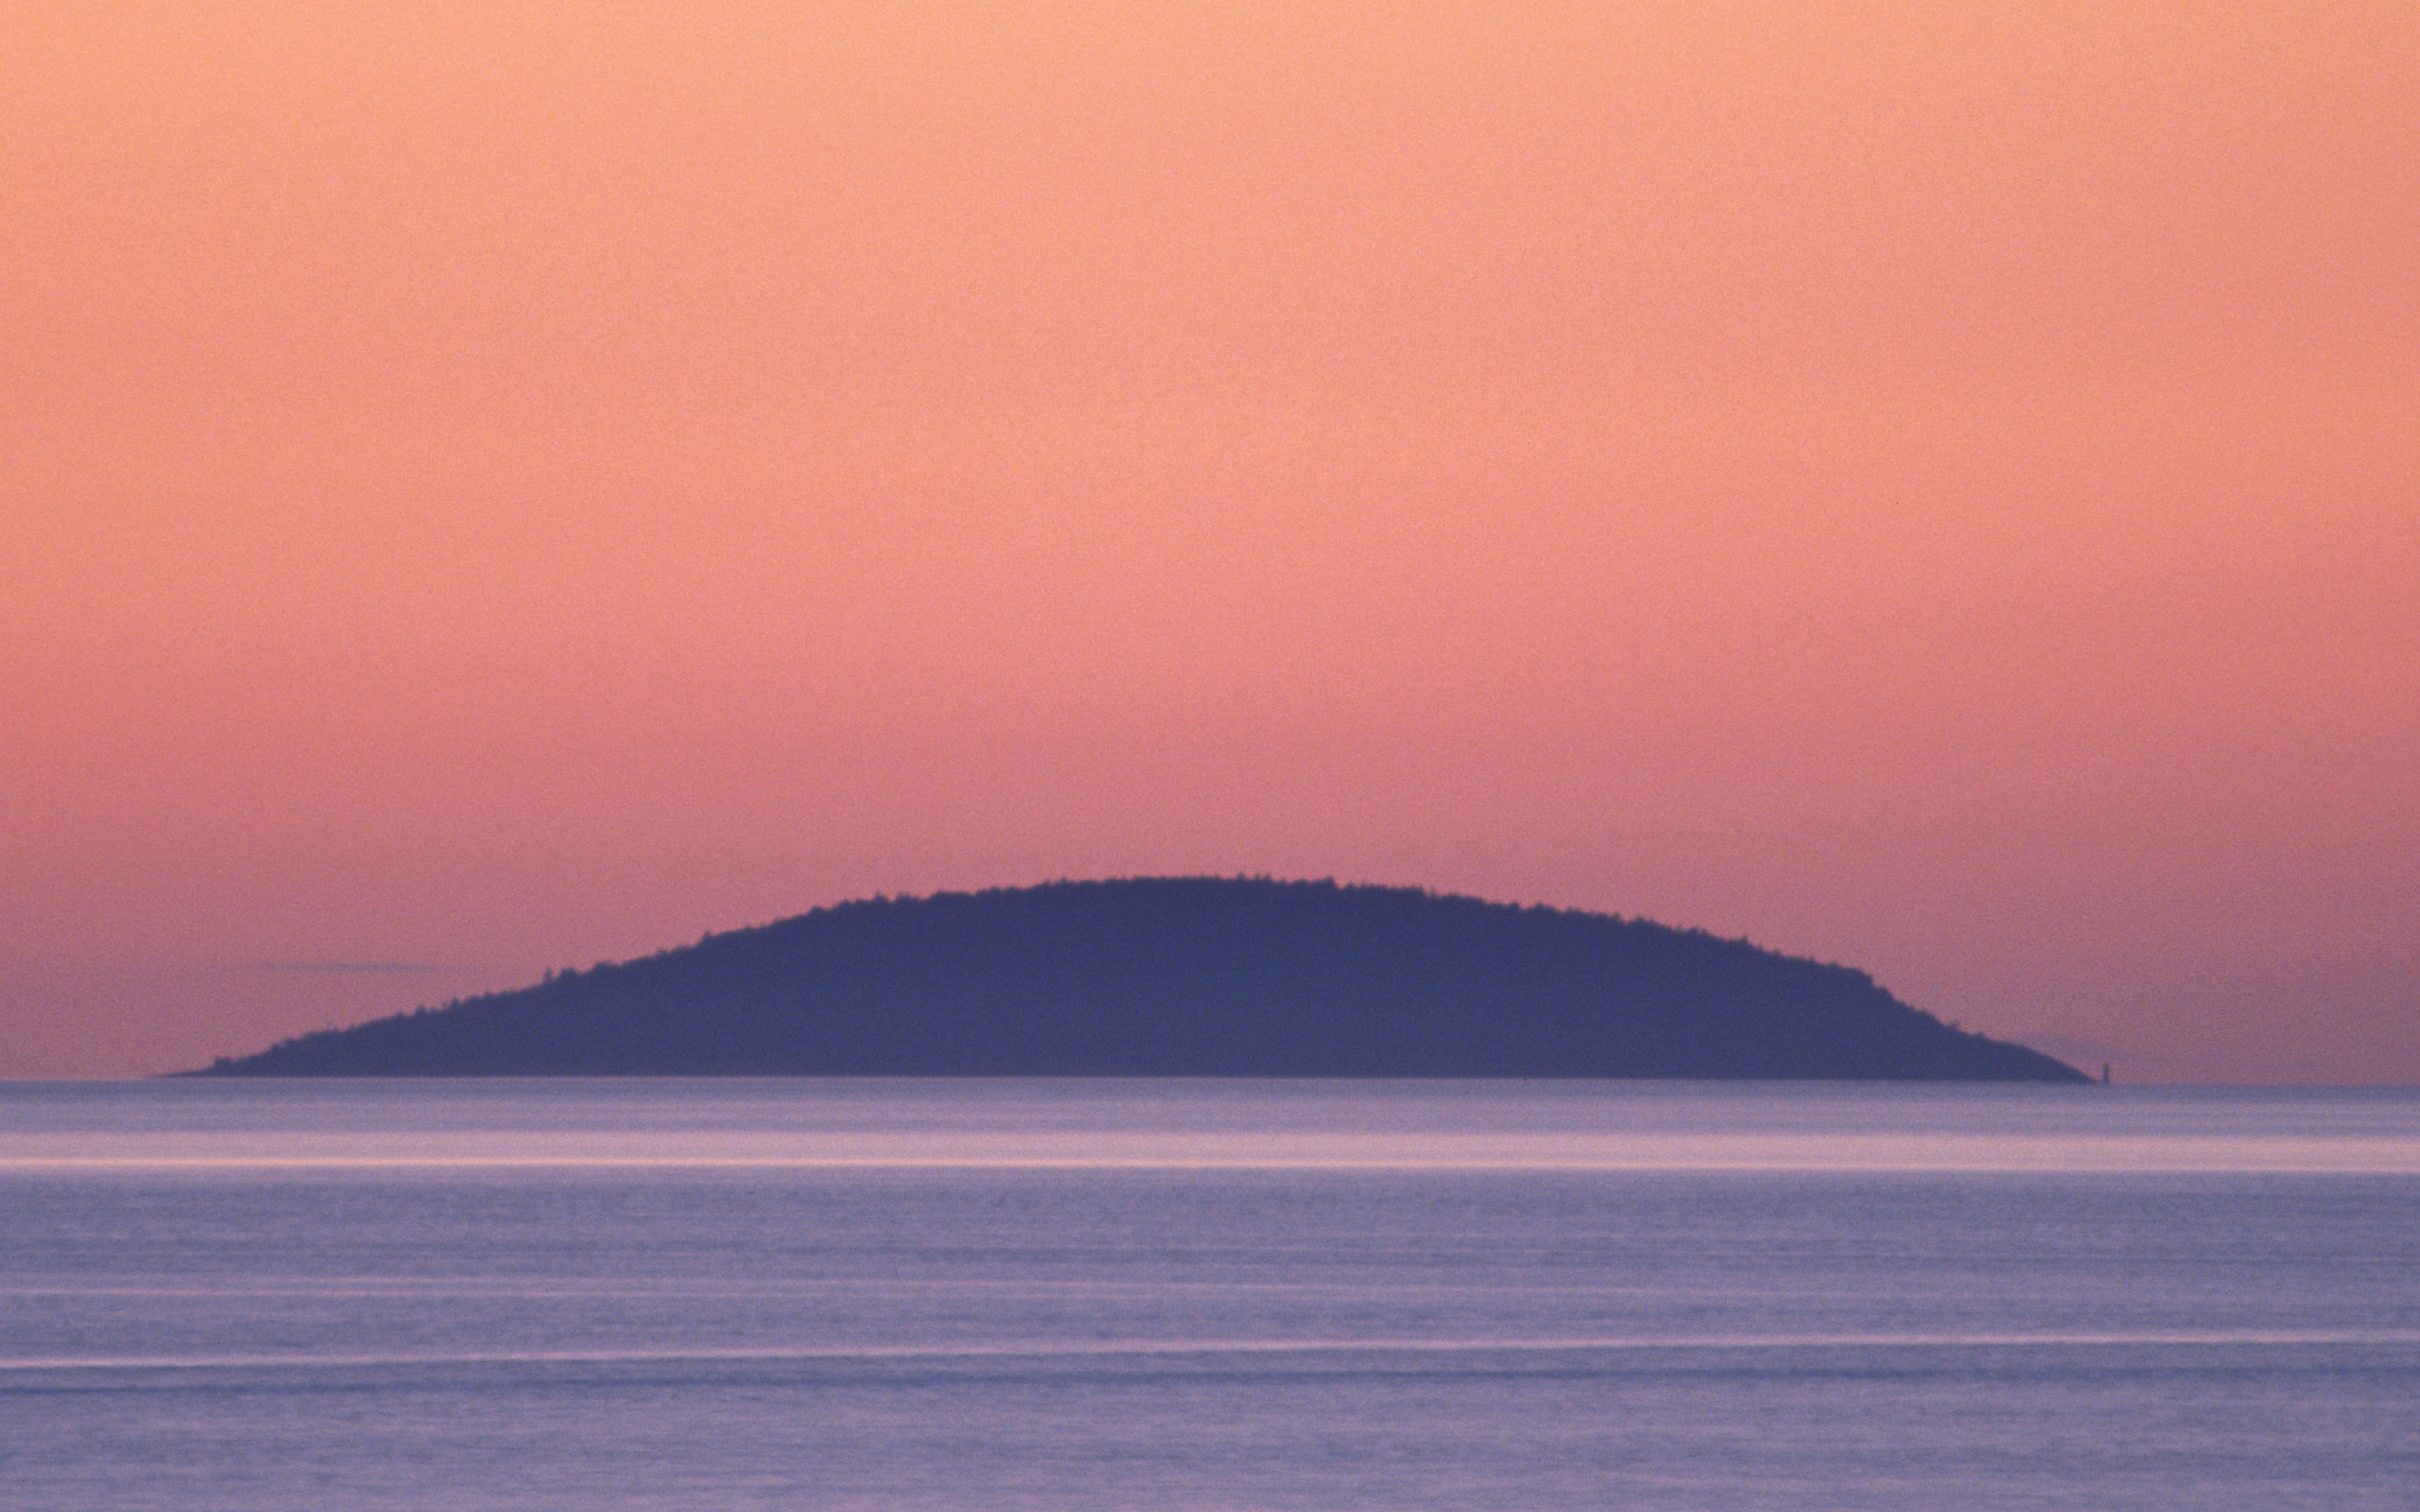 Rosa himmel med siluett av ön Blå Jungfrun i sikte